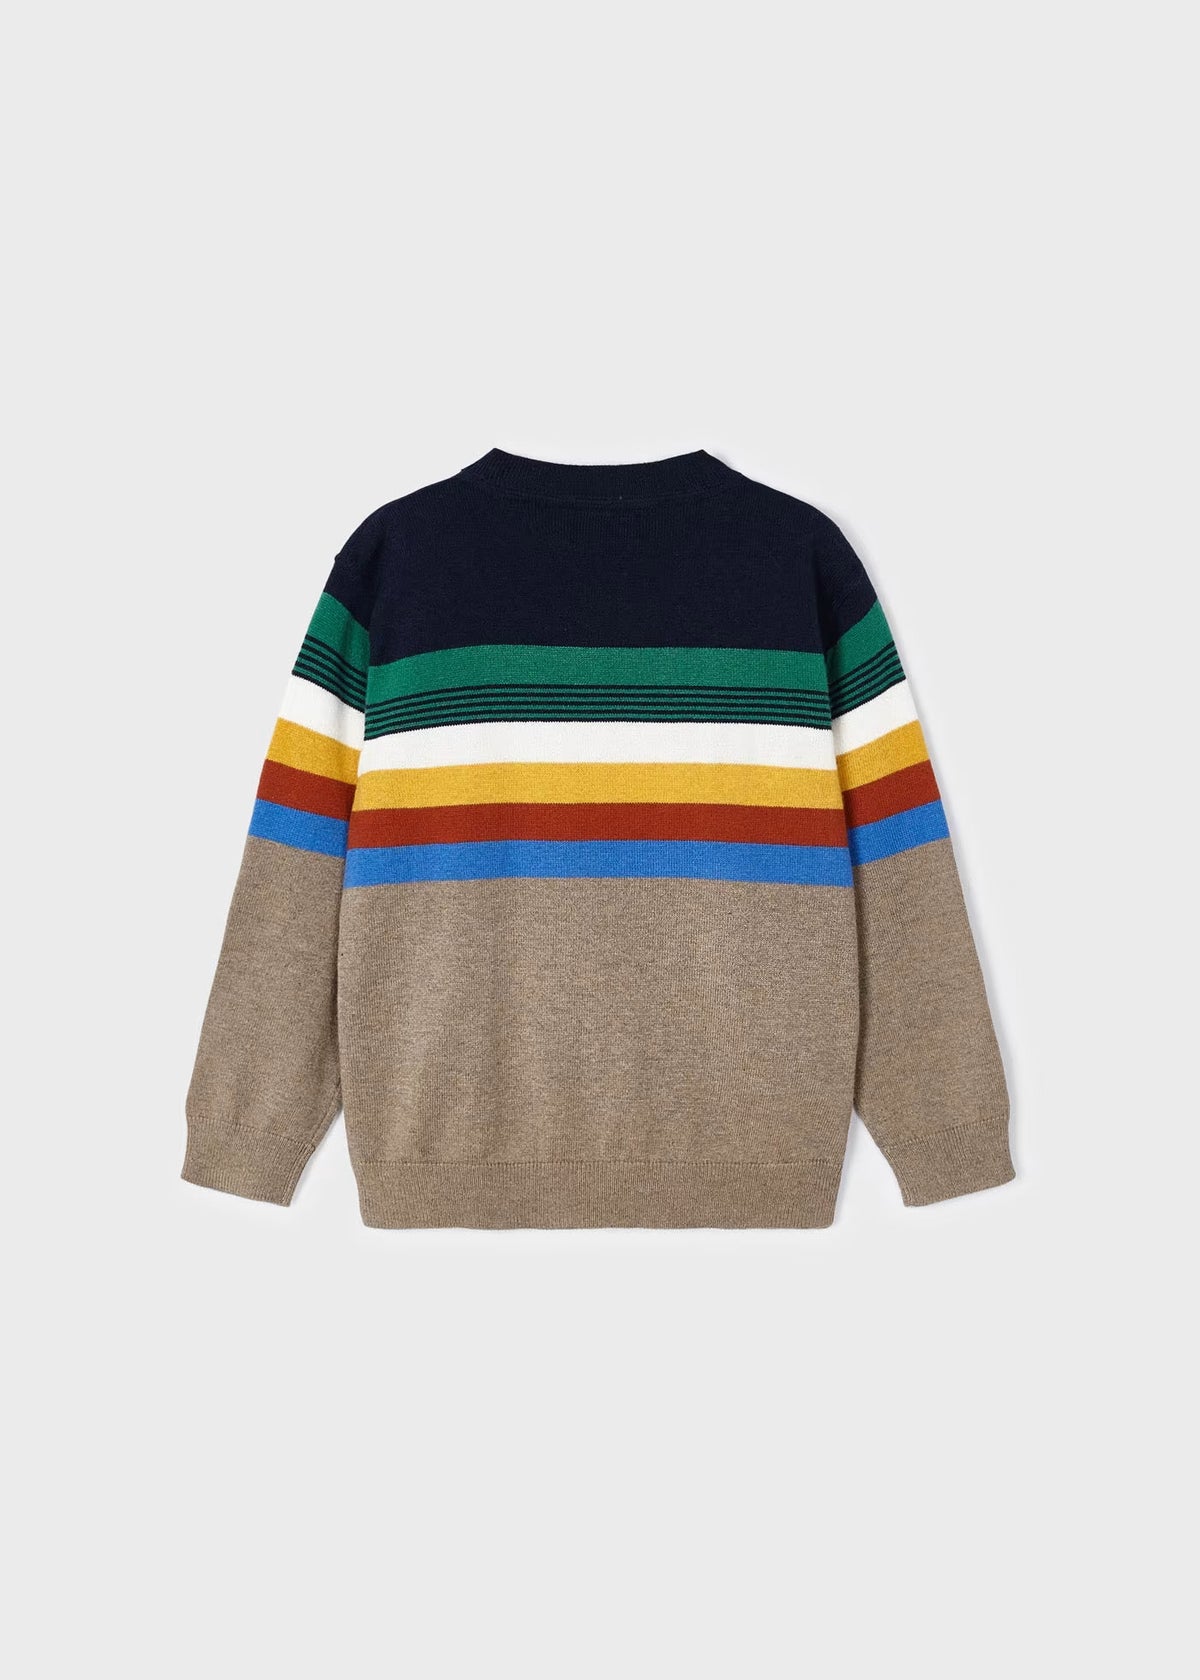 Jungen Pullover Sweater 4324 Bunt Gestreift